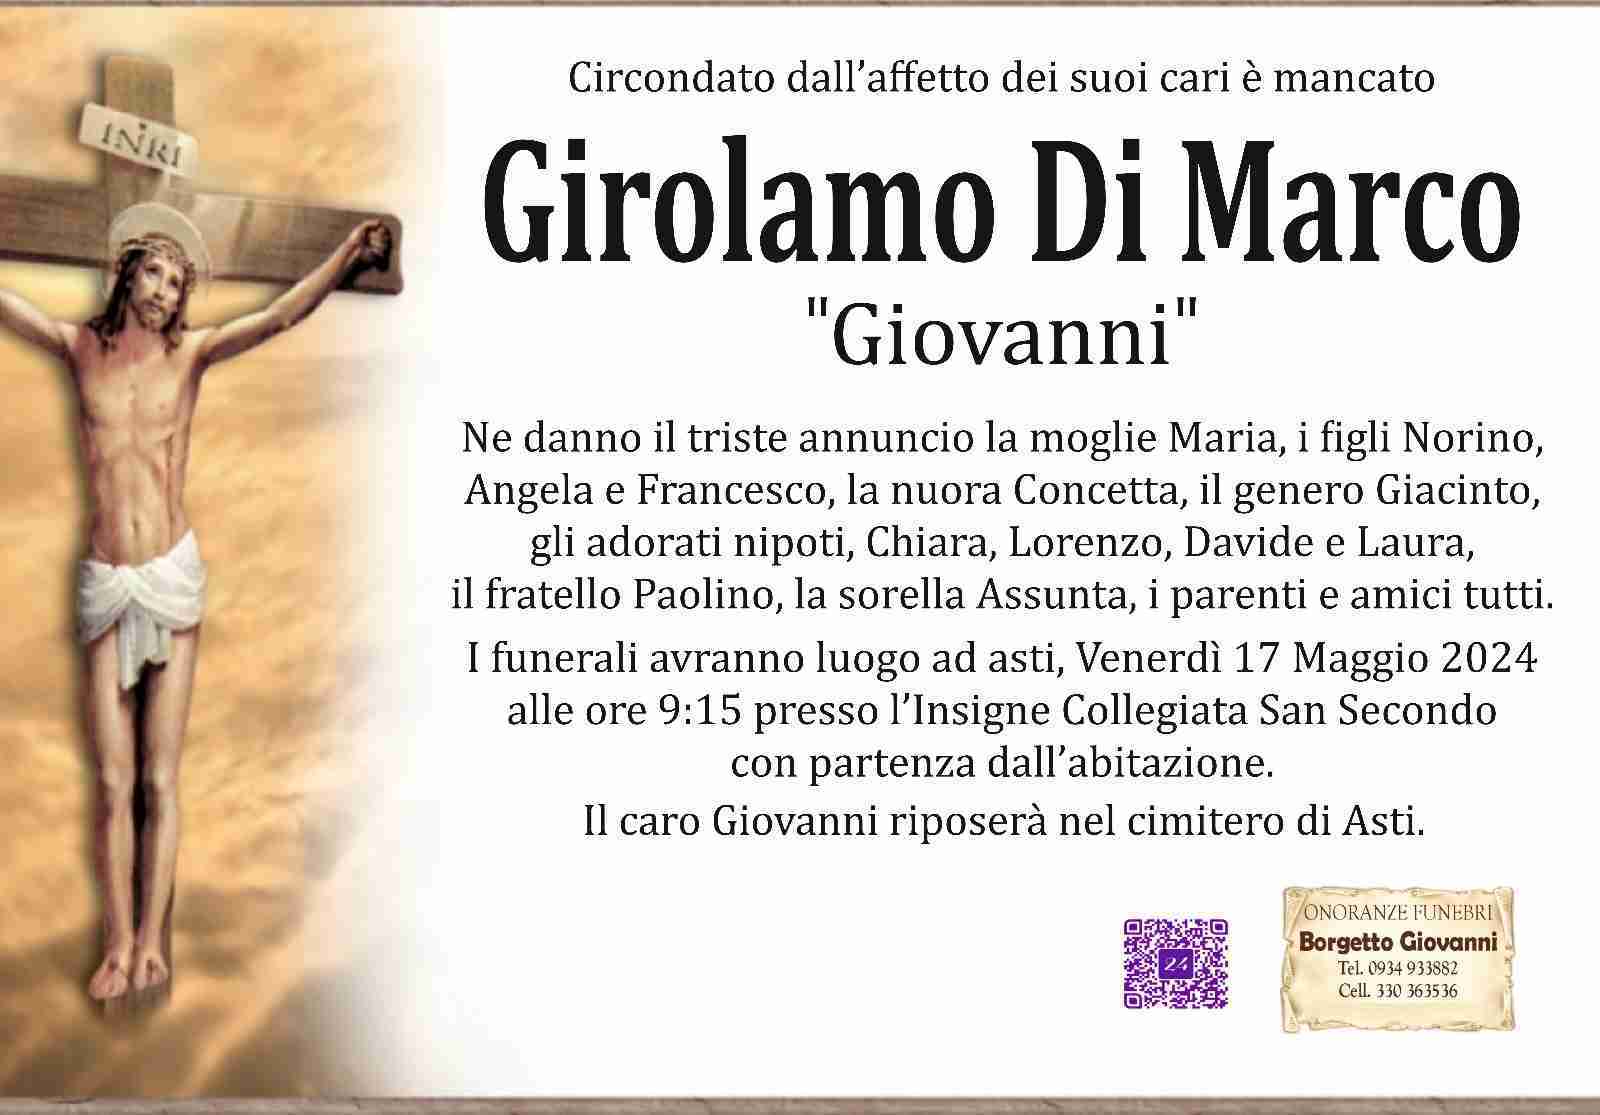 Girolamo Di Marco